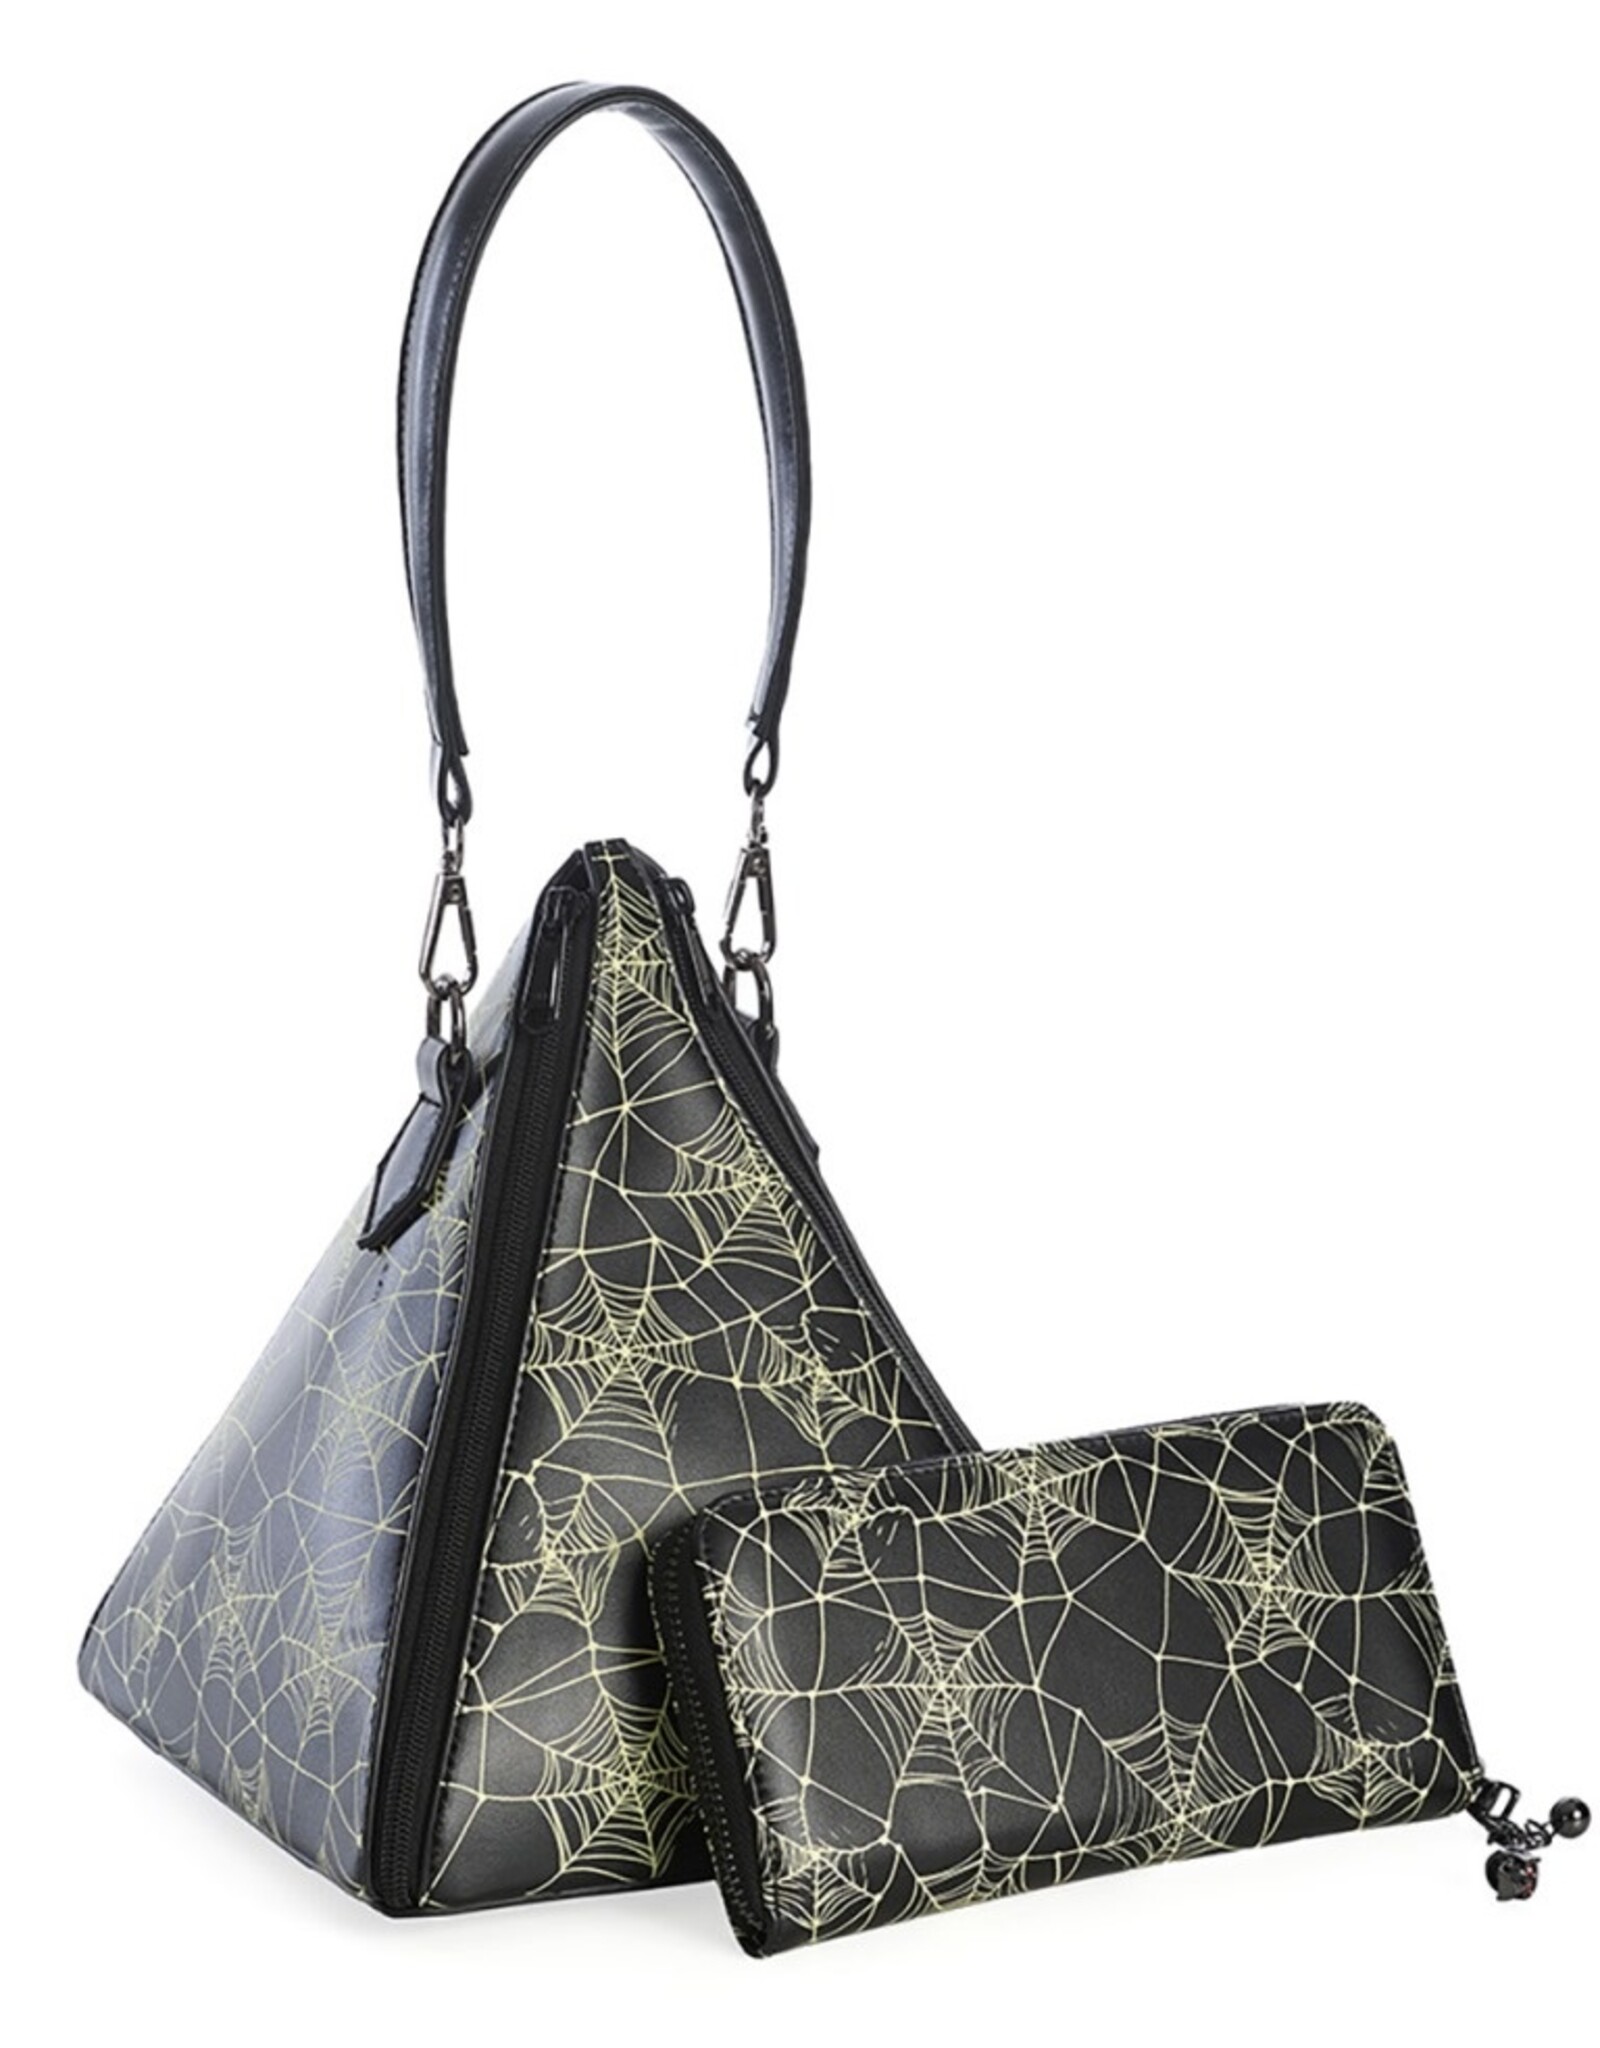 Banned Fantasy bags - Banned Cleopatra Pyramid handbag